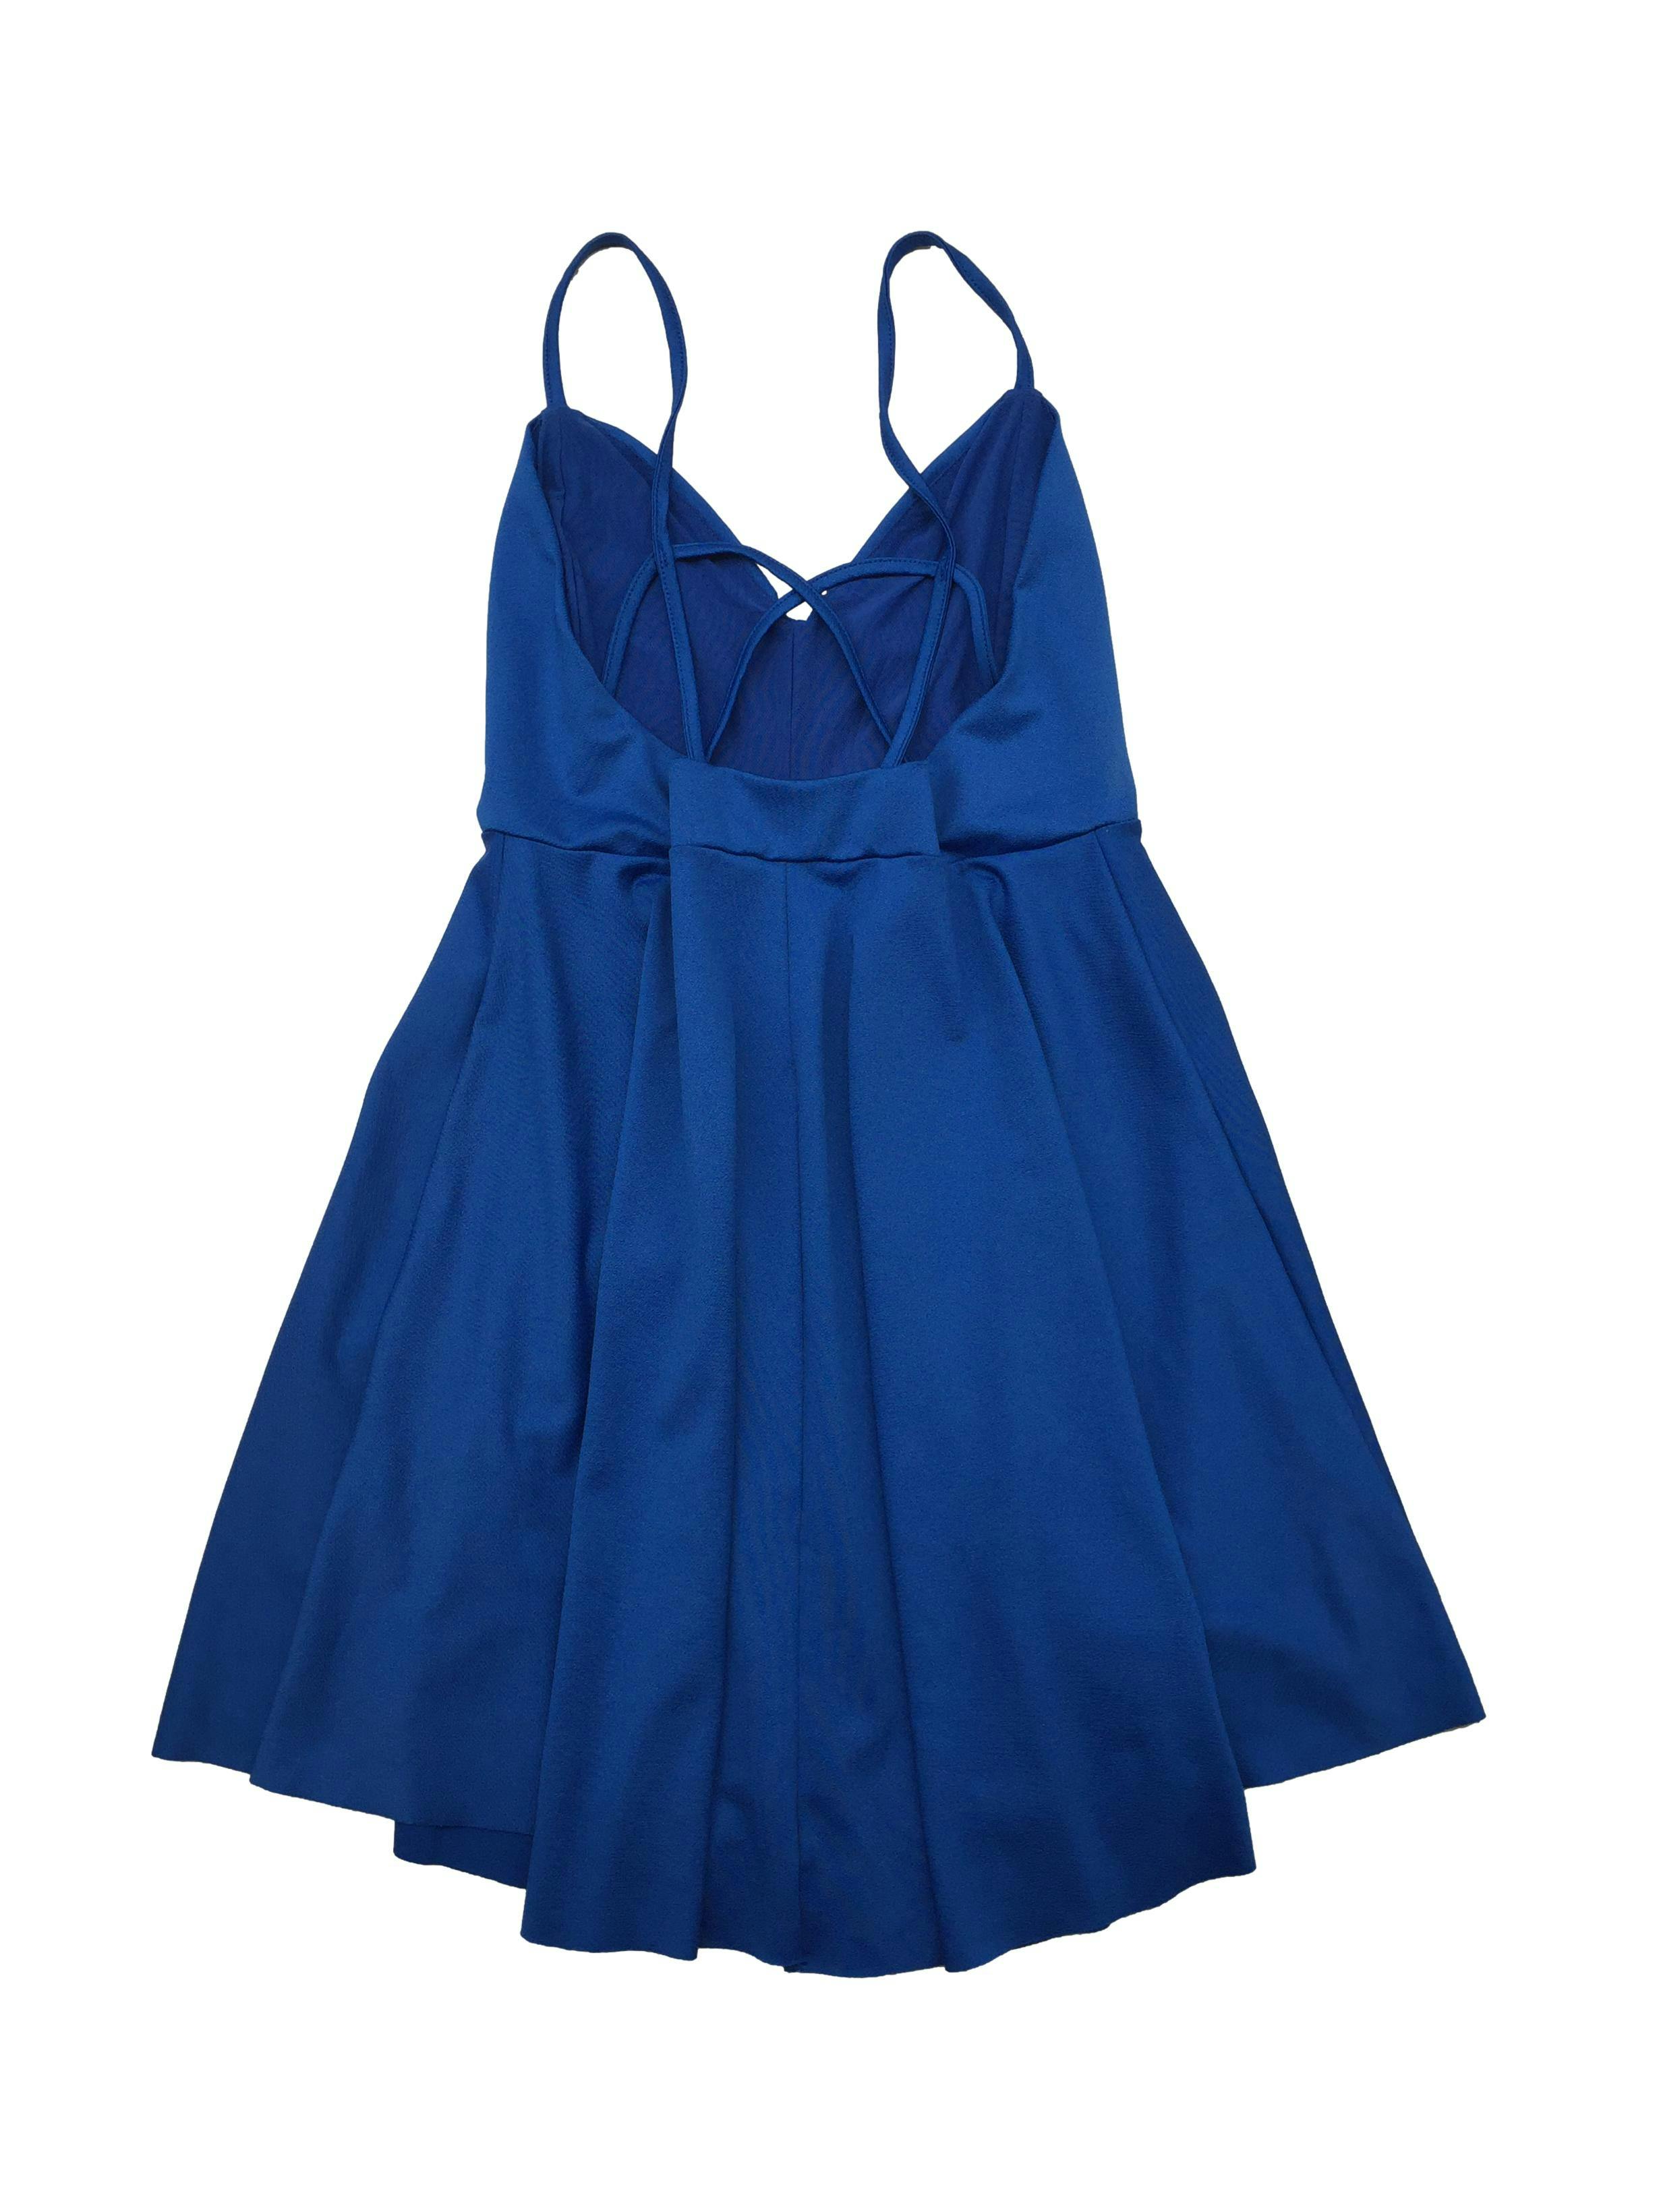 Vestido Index azul de tiras cruzada en espalda, forro de mesh en top y falda con vuelo. Busto: 88cm, Largo: 84cm